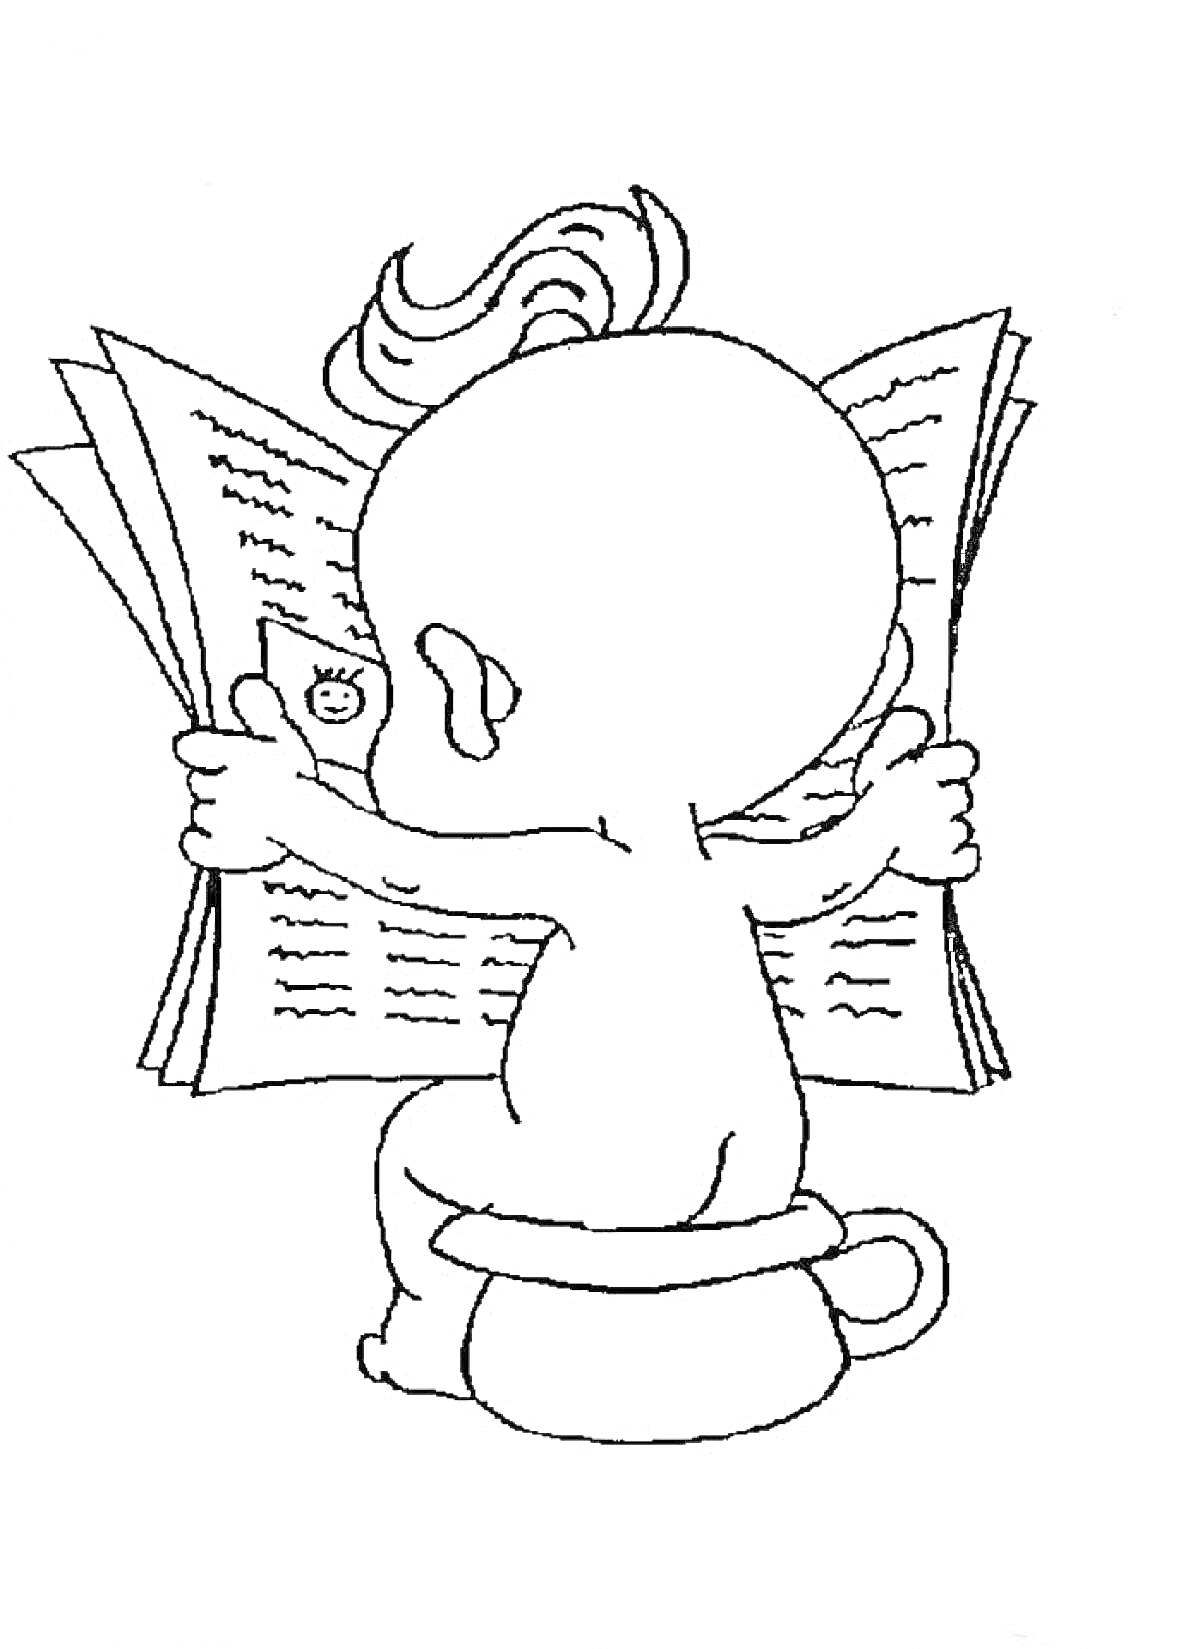 Раскраска Ребенок сидит на горшке и держит газету